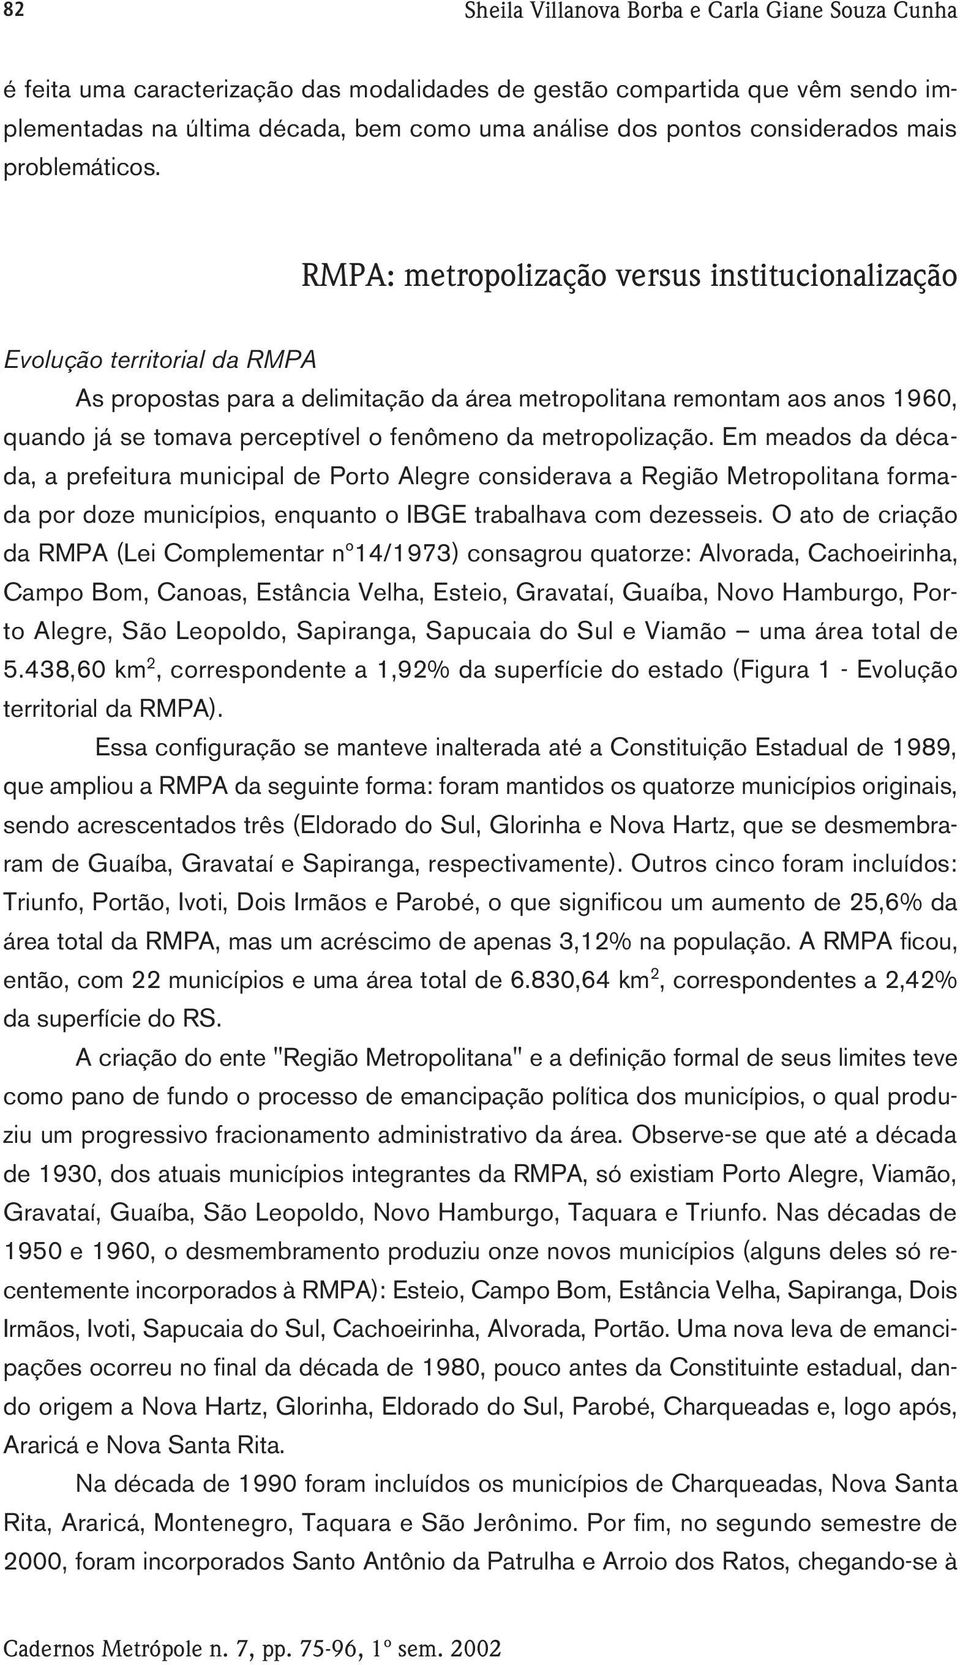 RMPA: metropolização versus institucionalização Evolução territorial da RMPA As propostas para a delimitação da área metropolitana remontam aos anos 1960, quando já se tomava perceptível o fenômeno